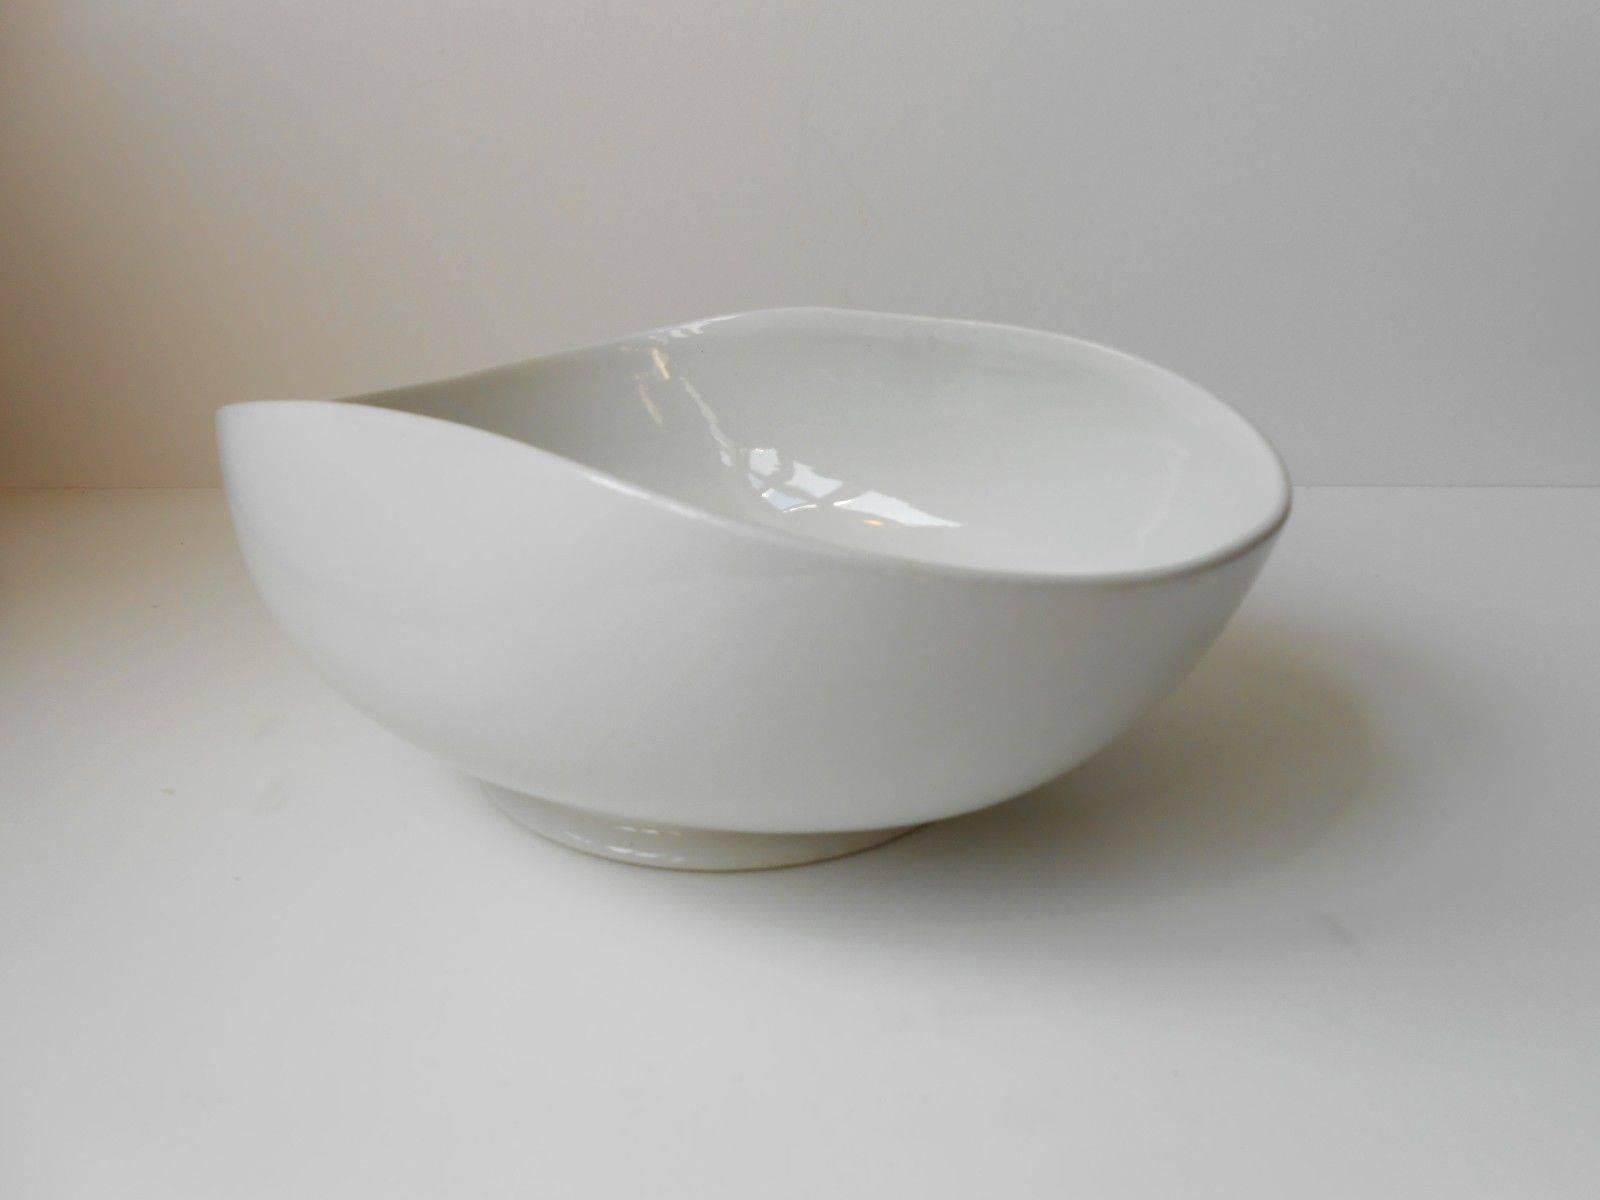 Diese seltene geschwungene, weiß glasierte Keramikschale wurde 1938 von dem schwedischen Keramiker Wilhelm Kåge entworfen. Es ist ein Teil der weichen Formen lin (Fin: Mjuka Formernas). Das offene, organische und biomorphe Design ist zwar